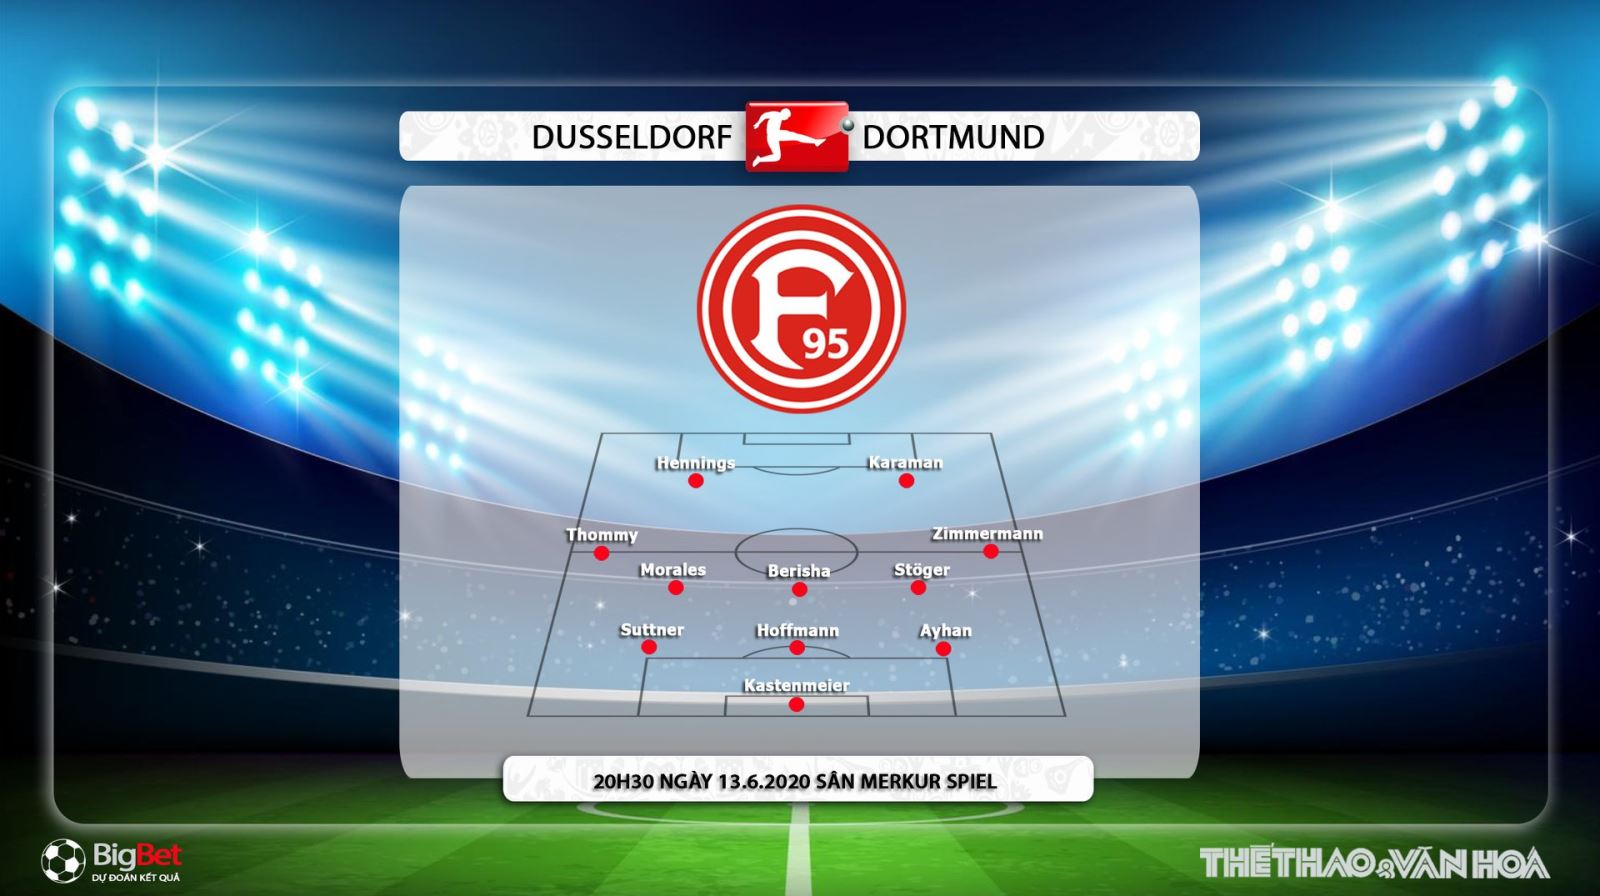 Dusseldorf vs Dortmund, Dortmund, Dusseldorf, dự đoán tỉ số, nhận định, soi kèo, kèo bóng đá